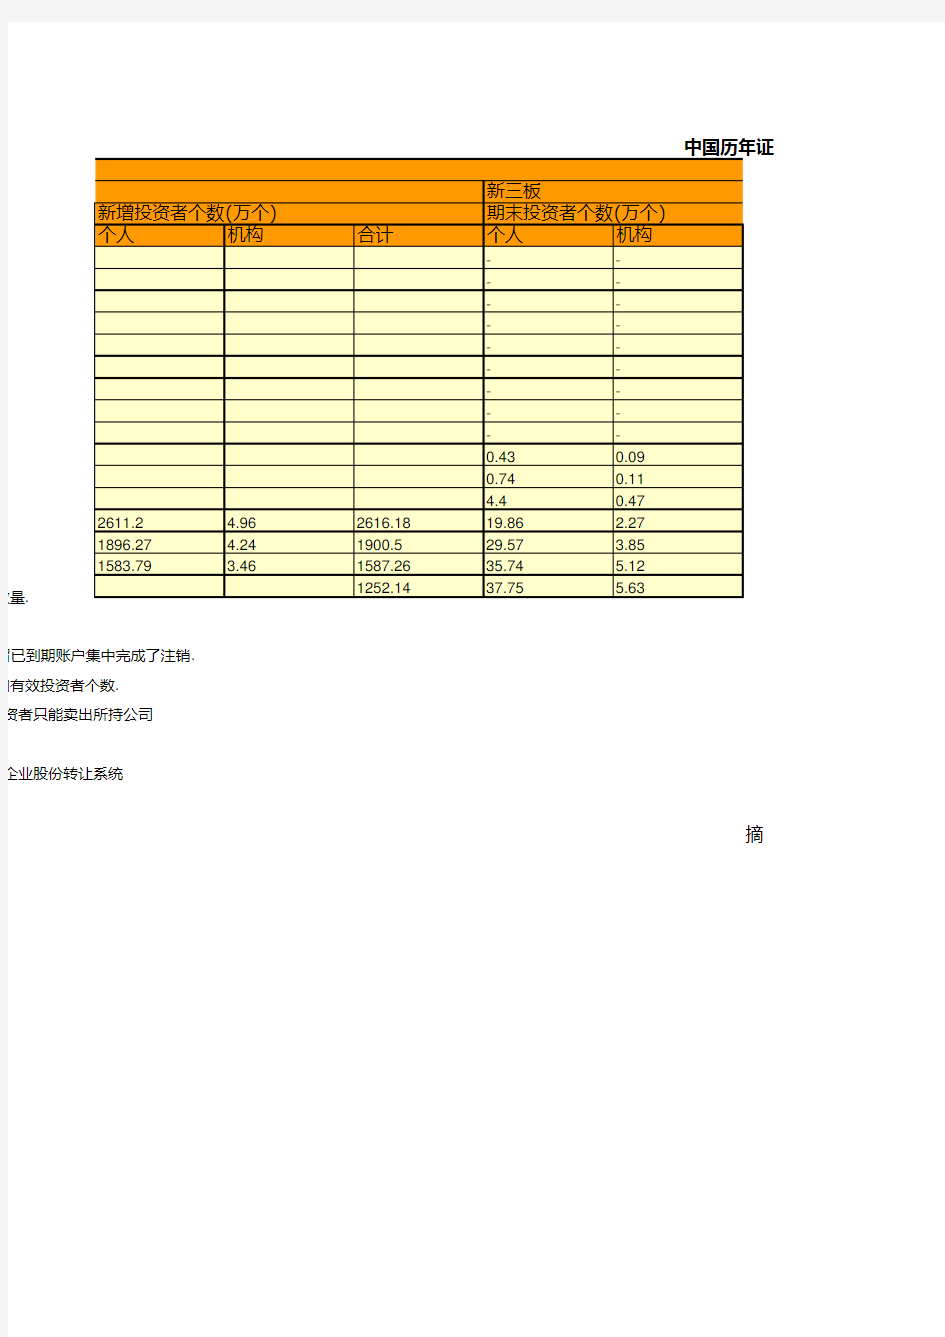 中国历年证券期货市场投资者情况统计(2003-2018)